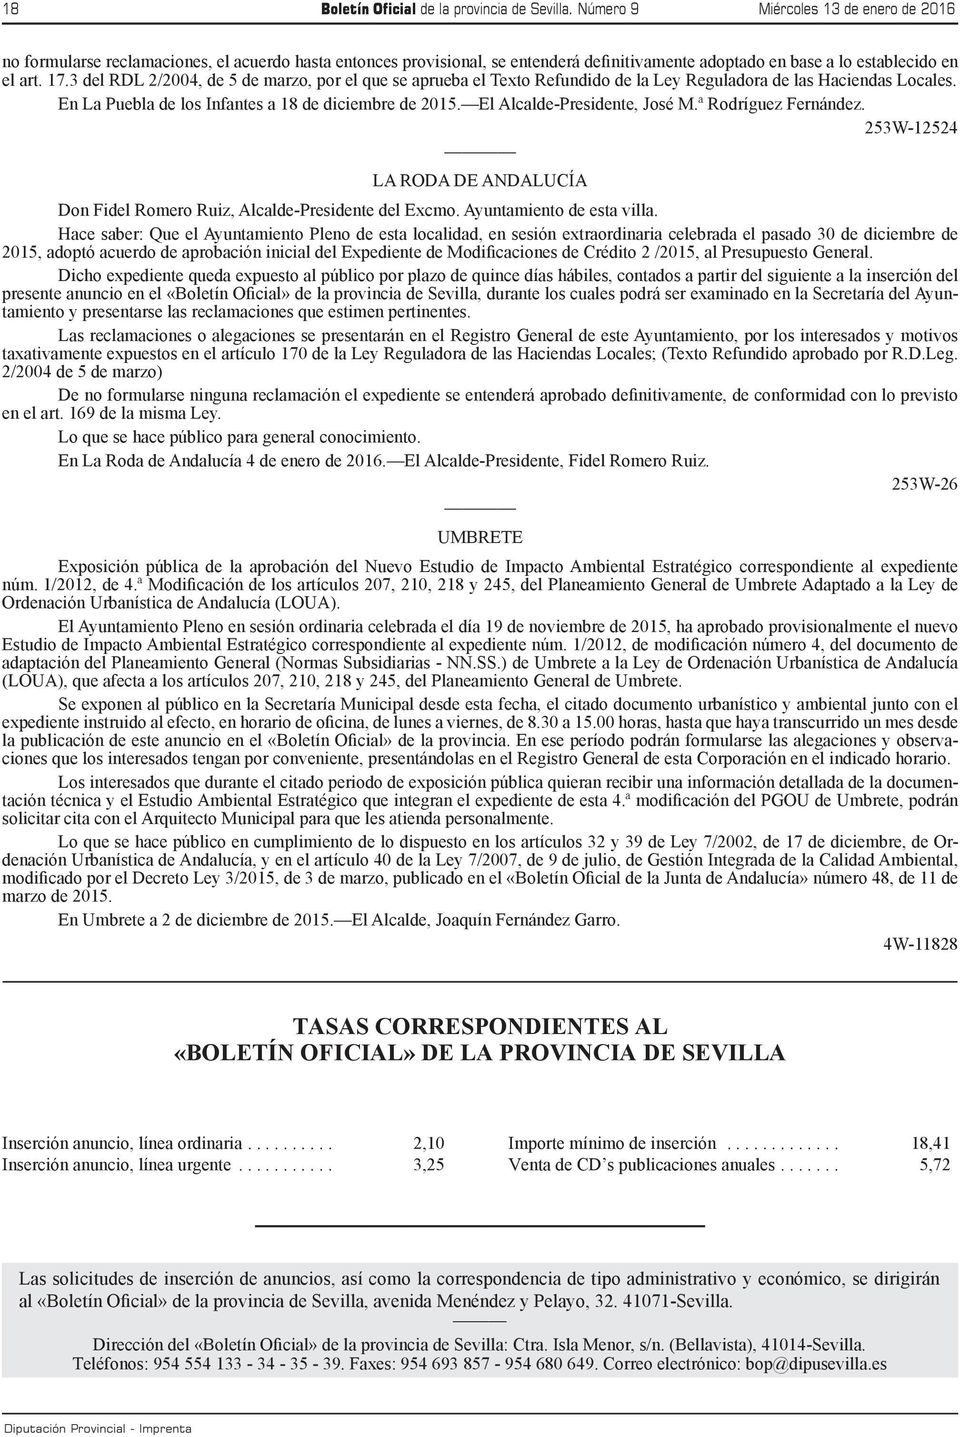 3 del RDL 2/2004, de 5 de marzo, por el que se aprueba el Texto Refundido de la Ley Reguladora de las Haciendas Locales. En La Puebla de los Infantes a 18 de diciembre de 2015.